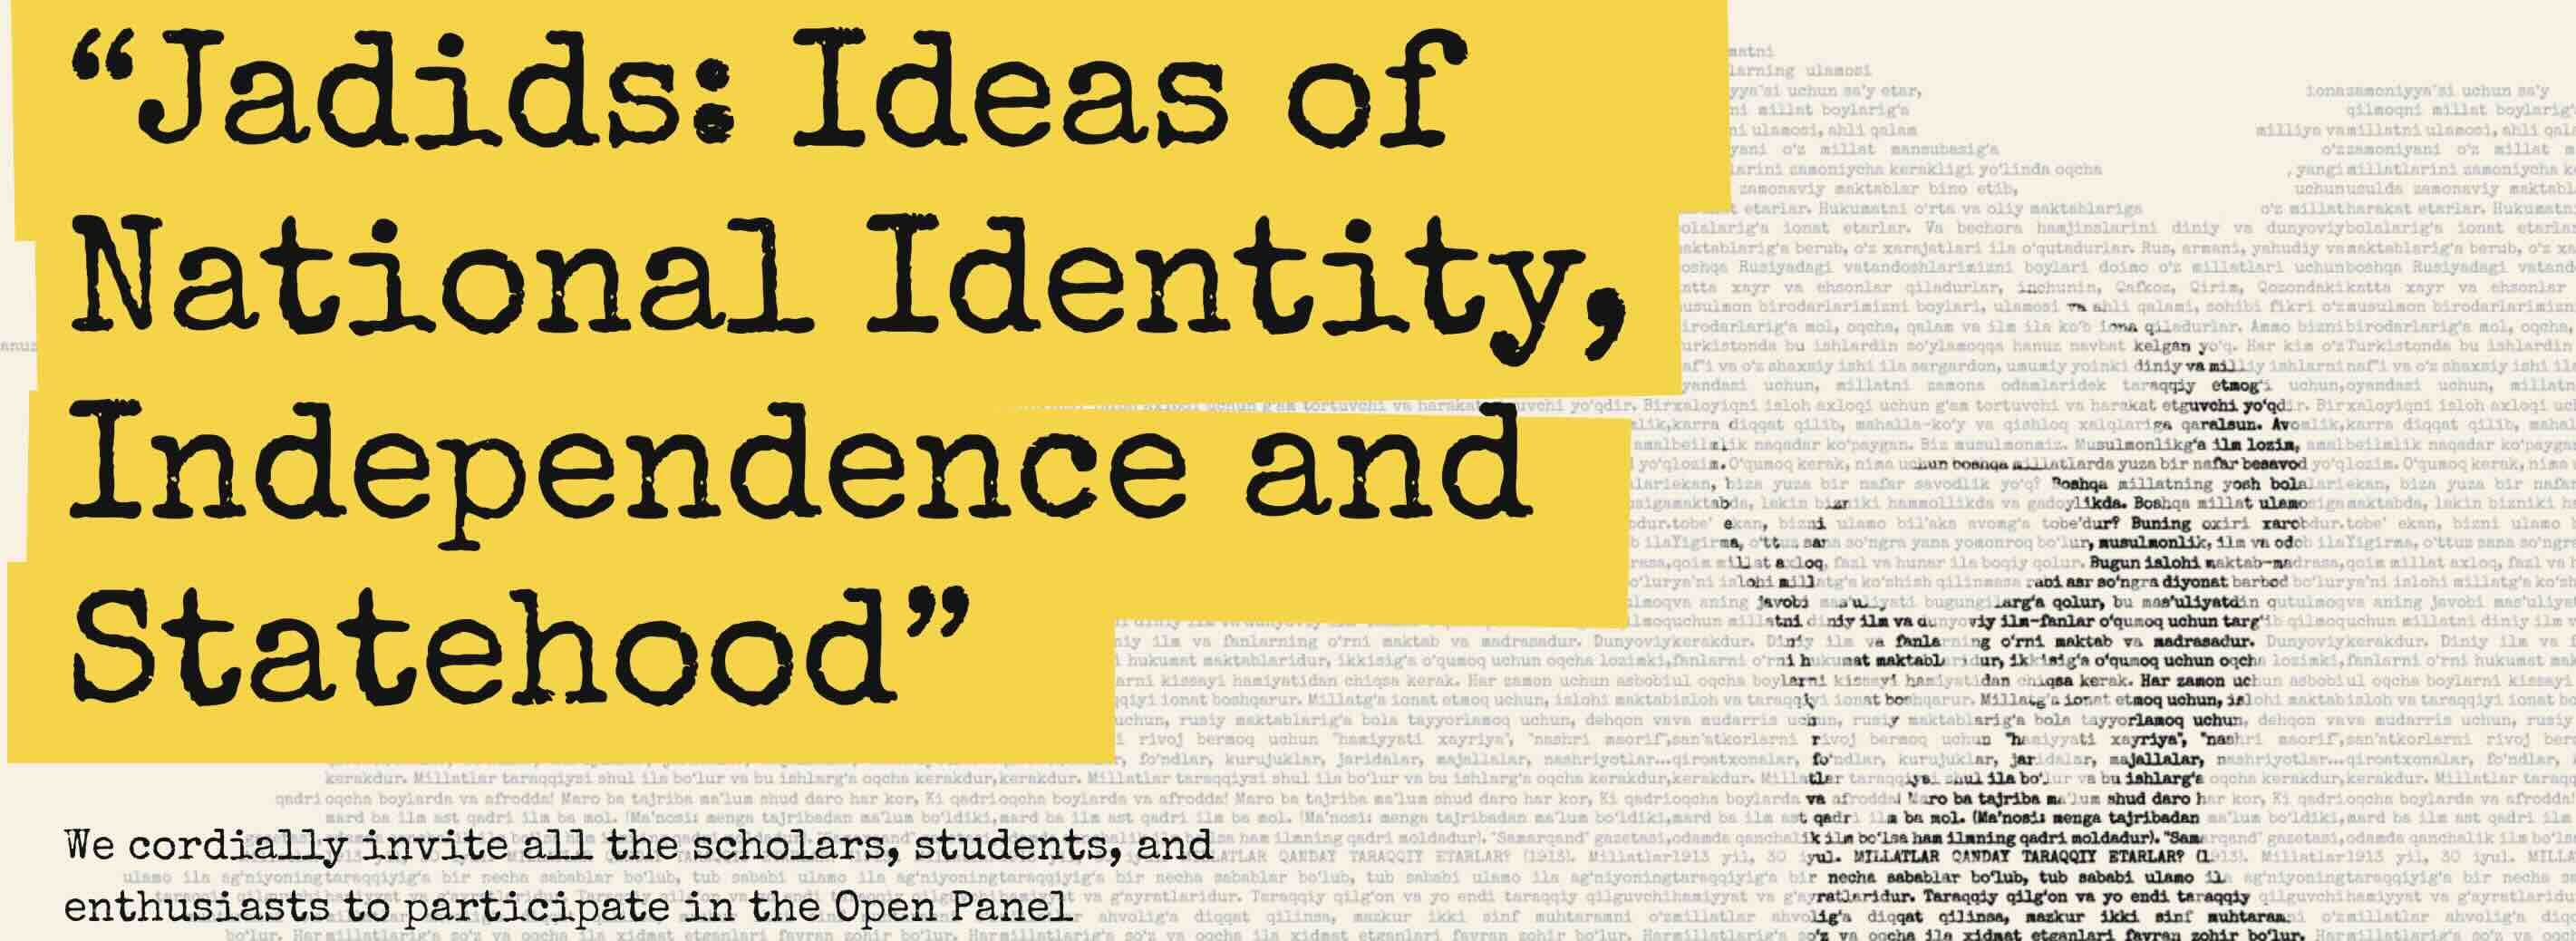 Jadids: impact on ideas of naitonal identity, statehood and independence